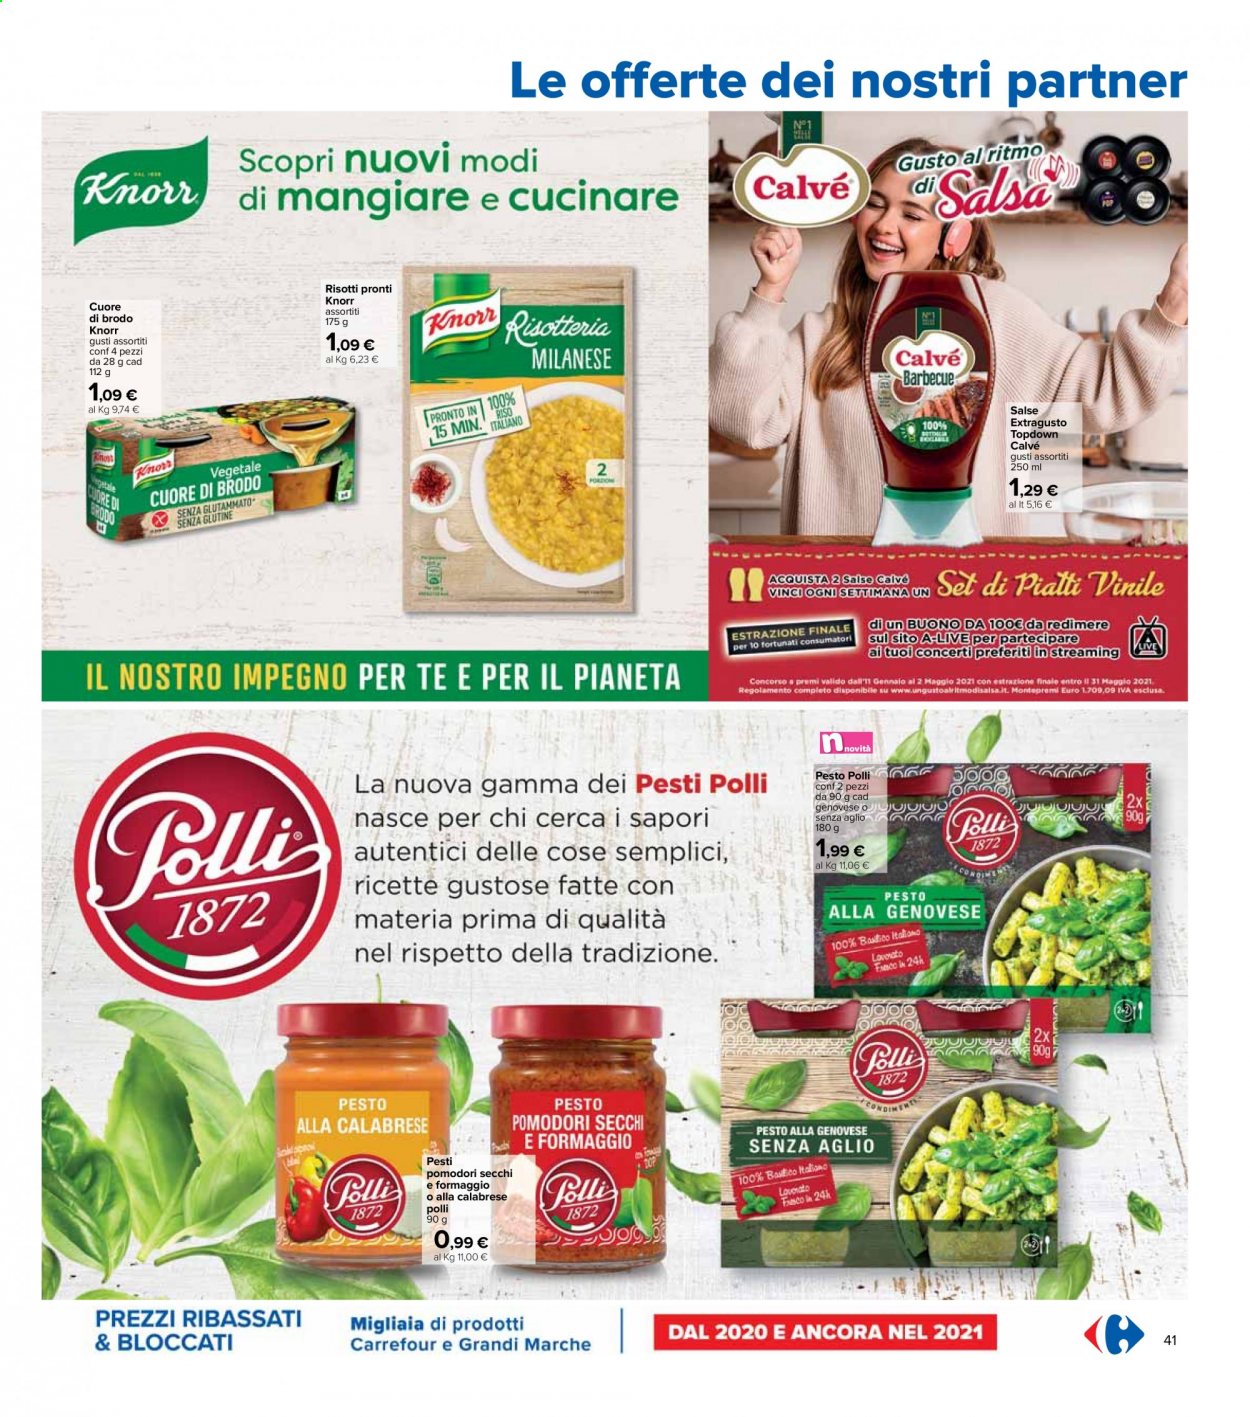 Volantino Carrefour - 6/4/2021 - 21/4/2021 - Prodotti in offerta - aglio, pomodori, Knorr, Calvé, brodo, pesto, riso, Cuore, pomodori secchi, barbecue. Pagina 41.